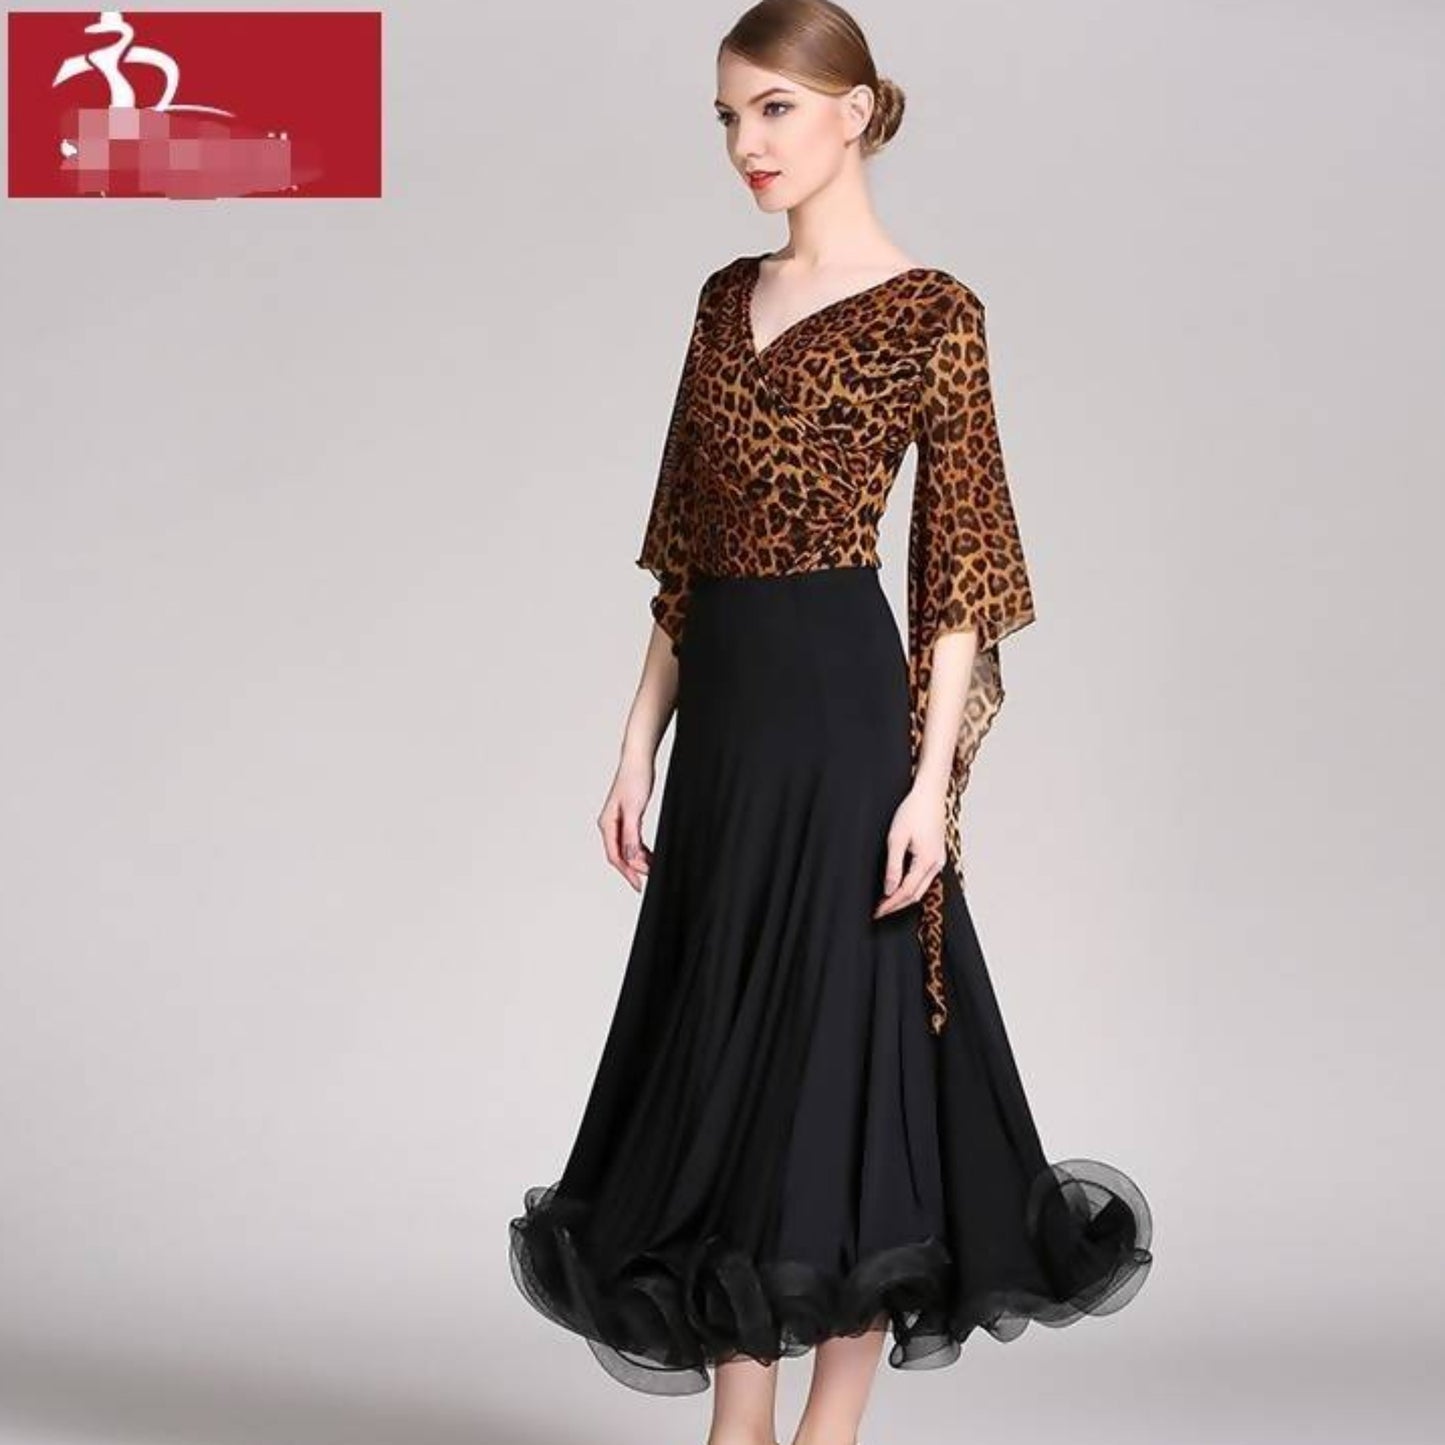 Floral Print Standard Dancewear Dress (dancewear, practice)